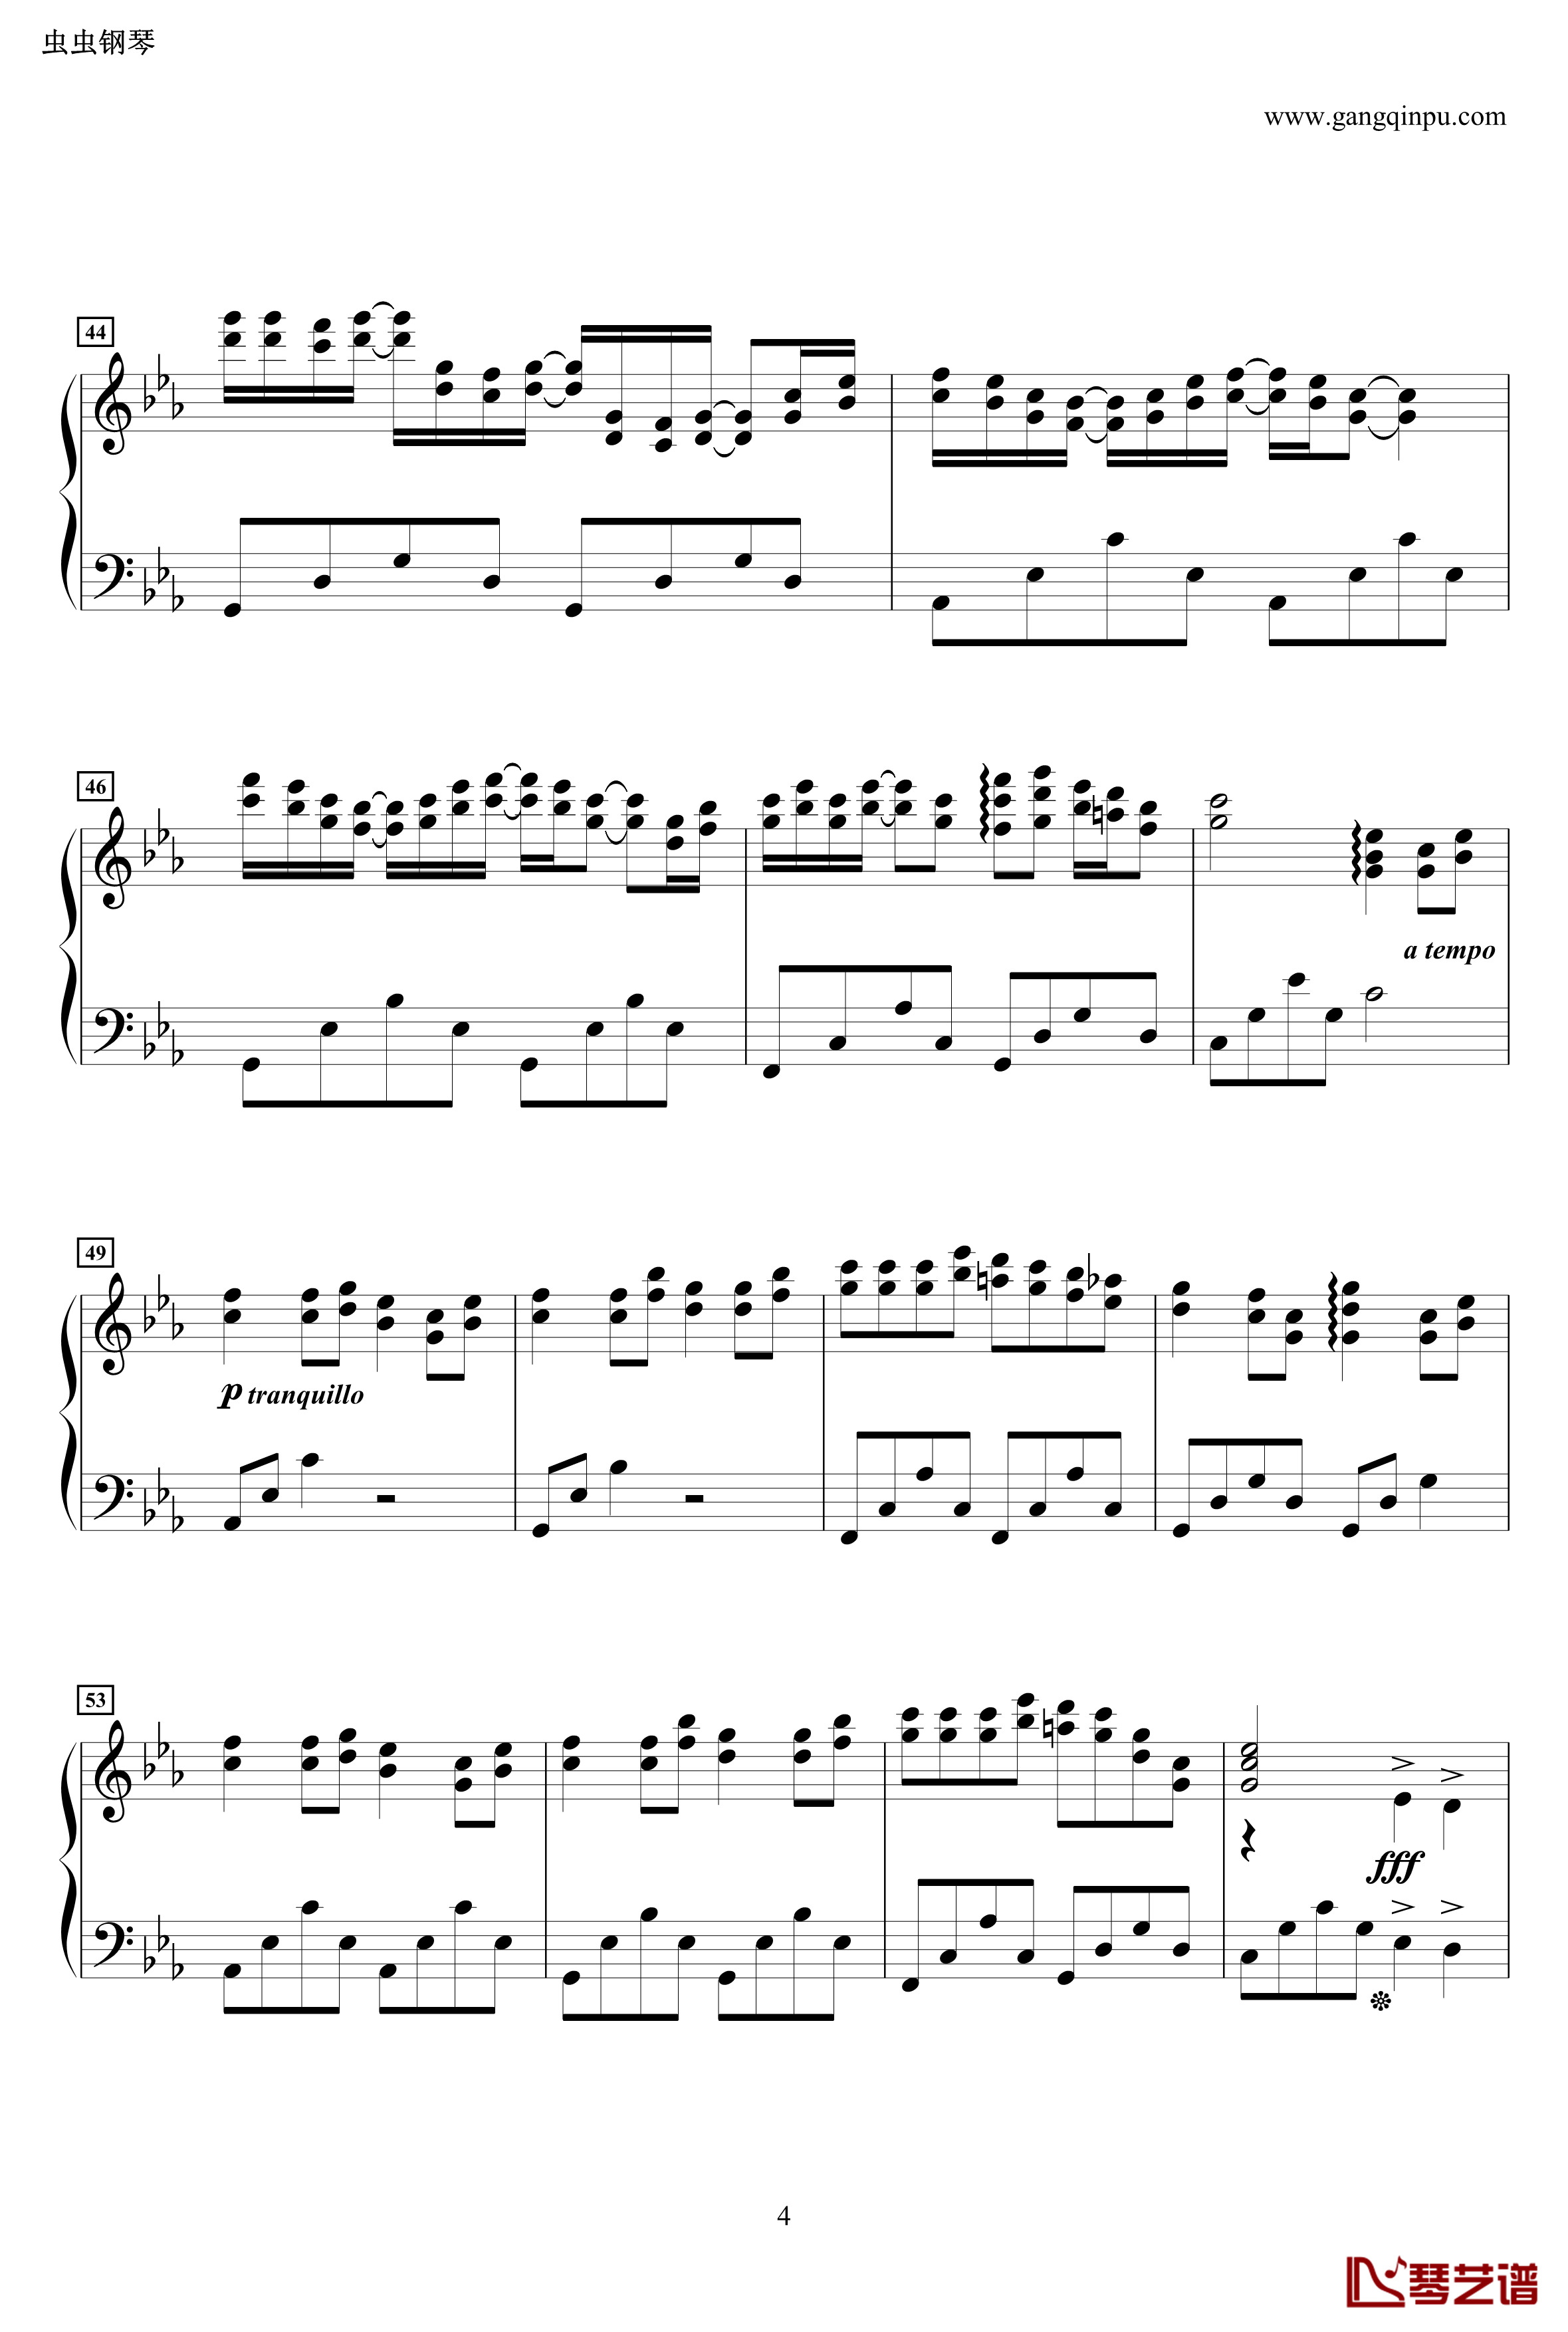 龙猫主题曲钢琴谱-风之甬道·風のとおり道·The Wind Forest·-·Best Original on Piano-久石让4